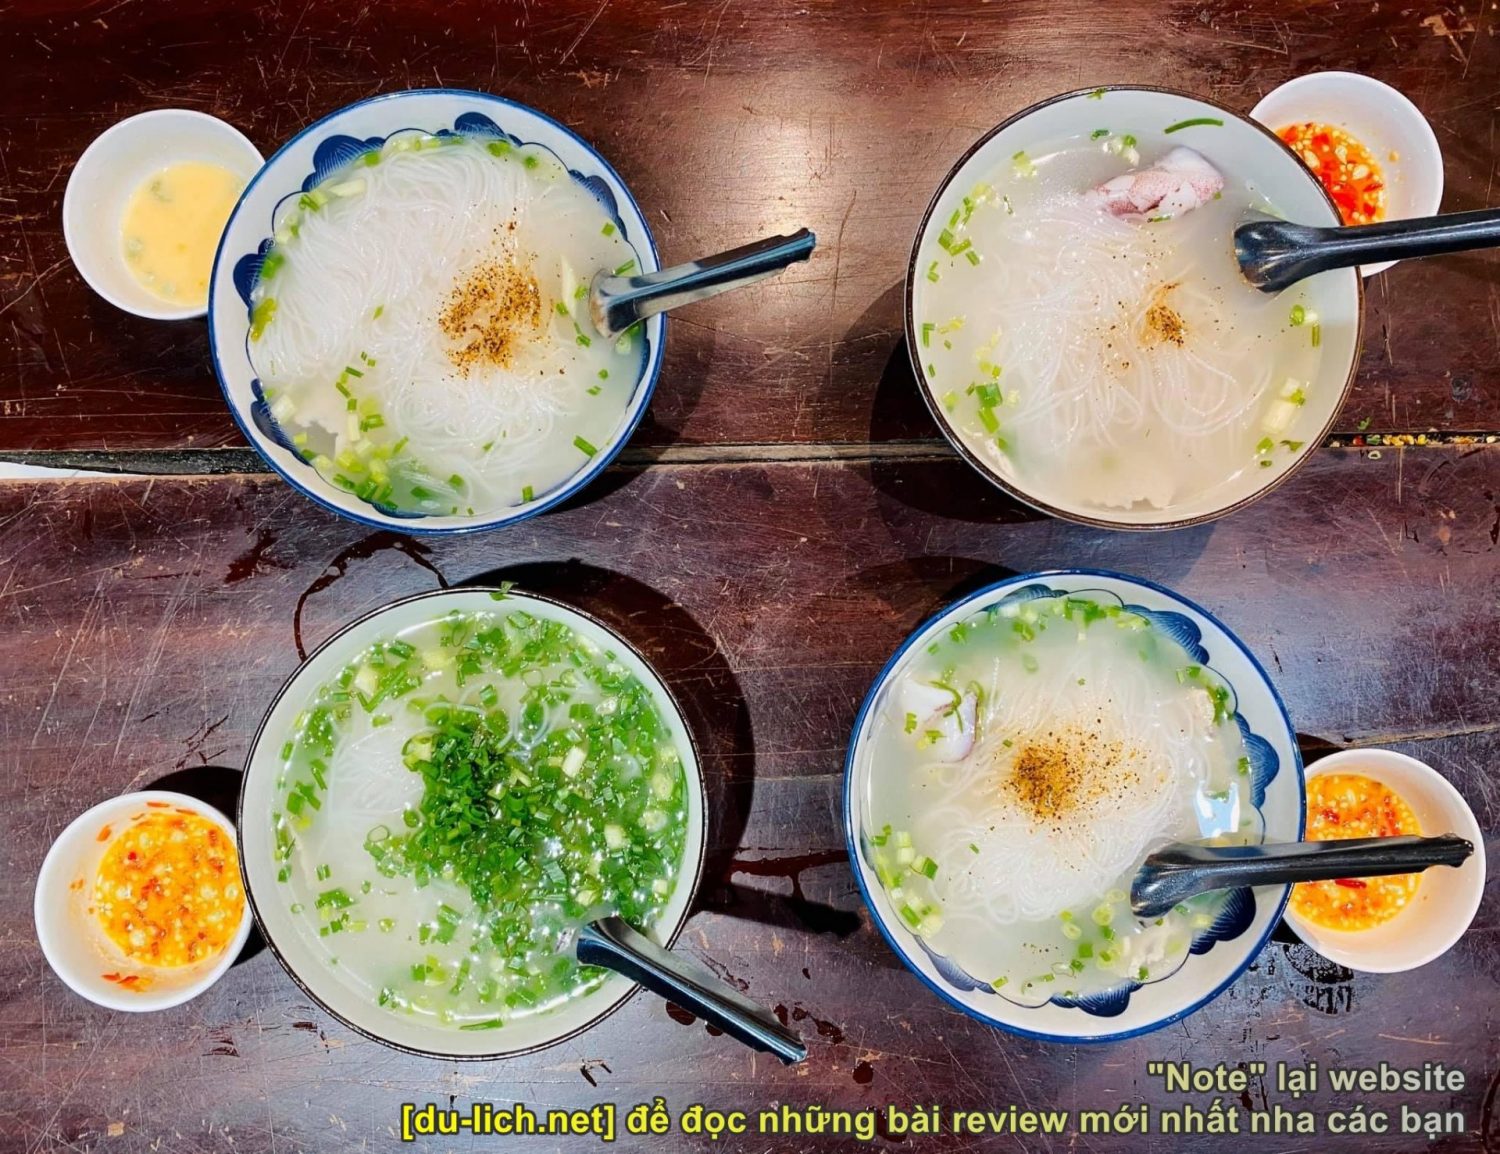 Các món ăn sáng ngon ở Phú Quốc nên thử - bún quậy Kiến Xây hoặc Thanh Hùng